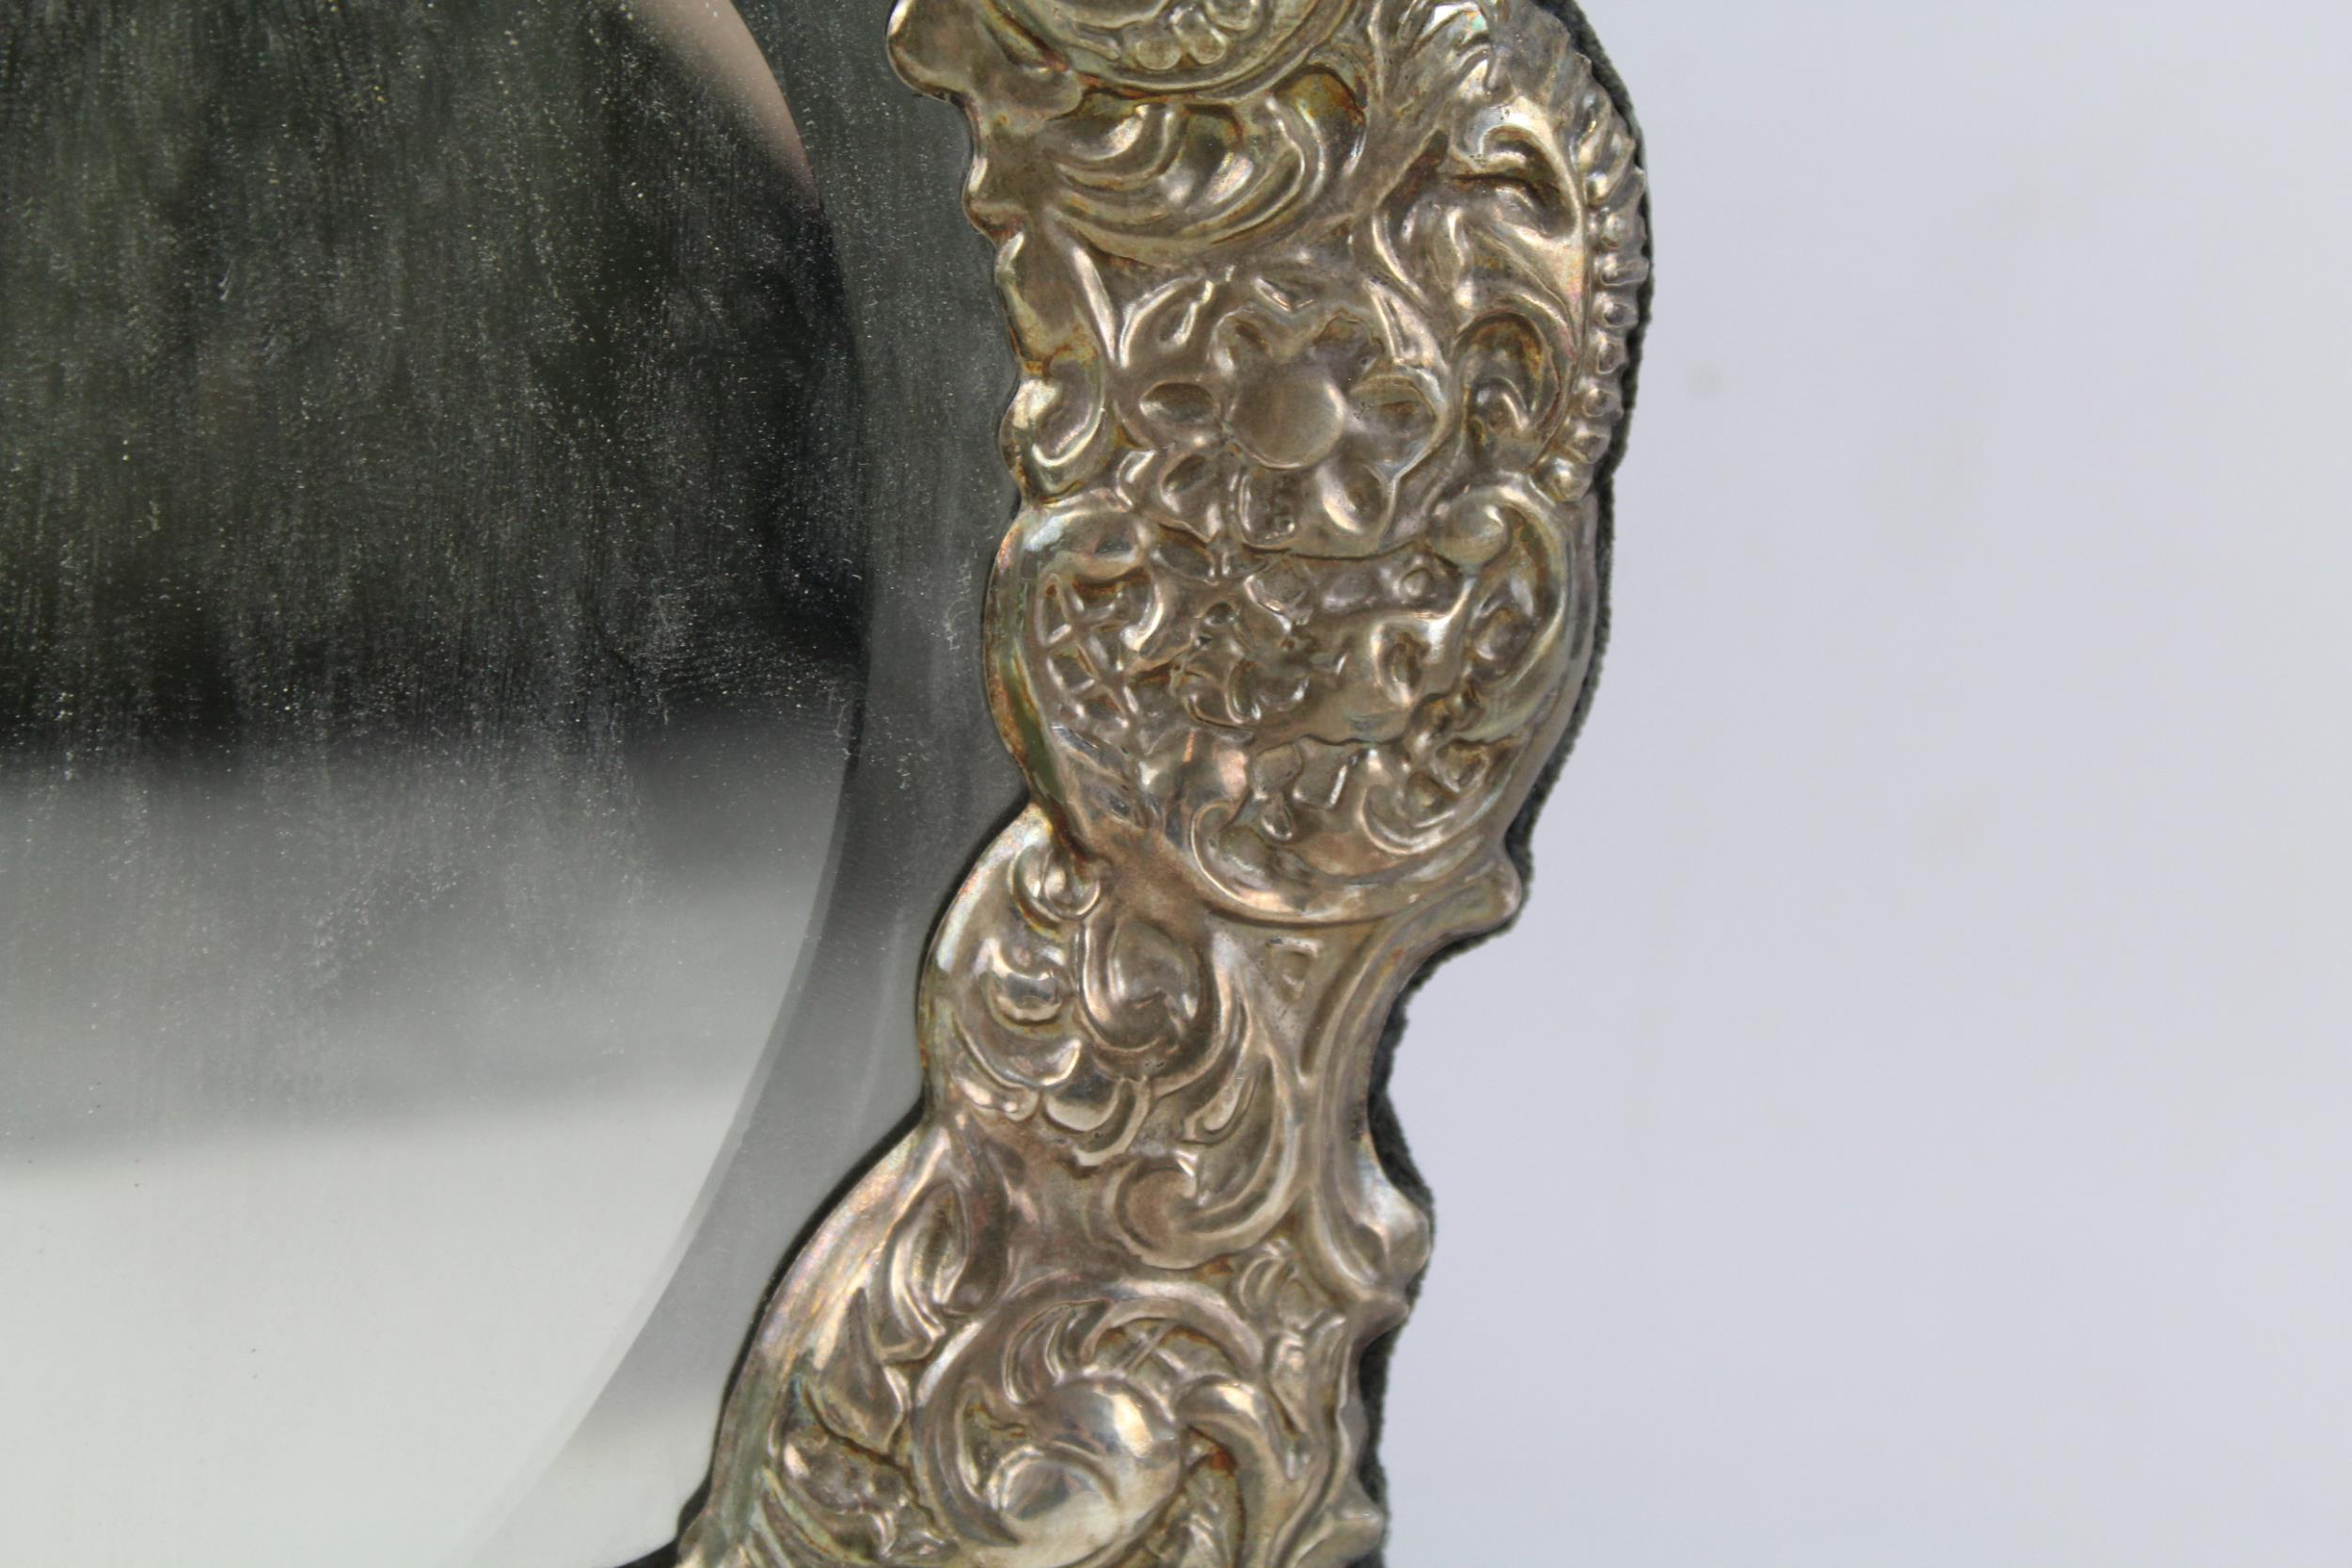 Vintage Hallmarked 1996 Sheffield Sterling Silver Cherub Detailed Mirror (692g) - Maker - Ari D - Image 7 of 7